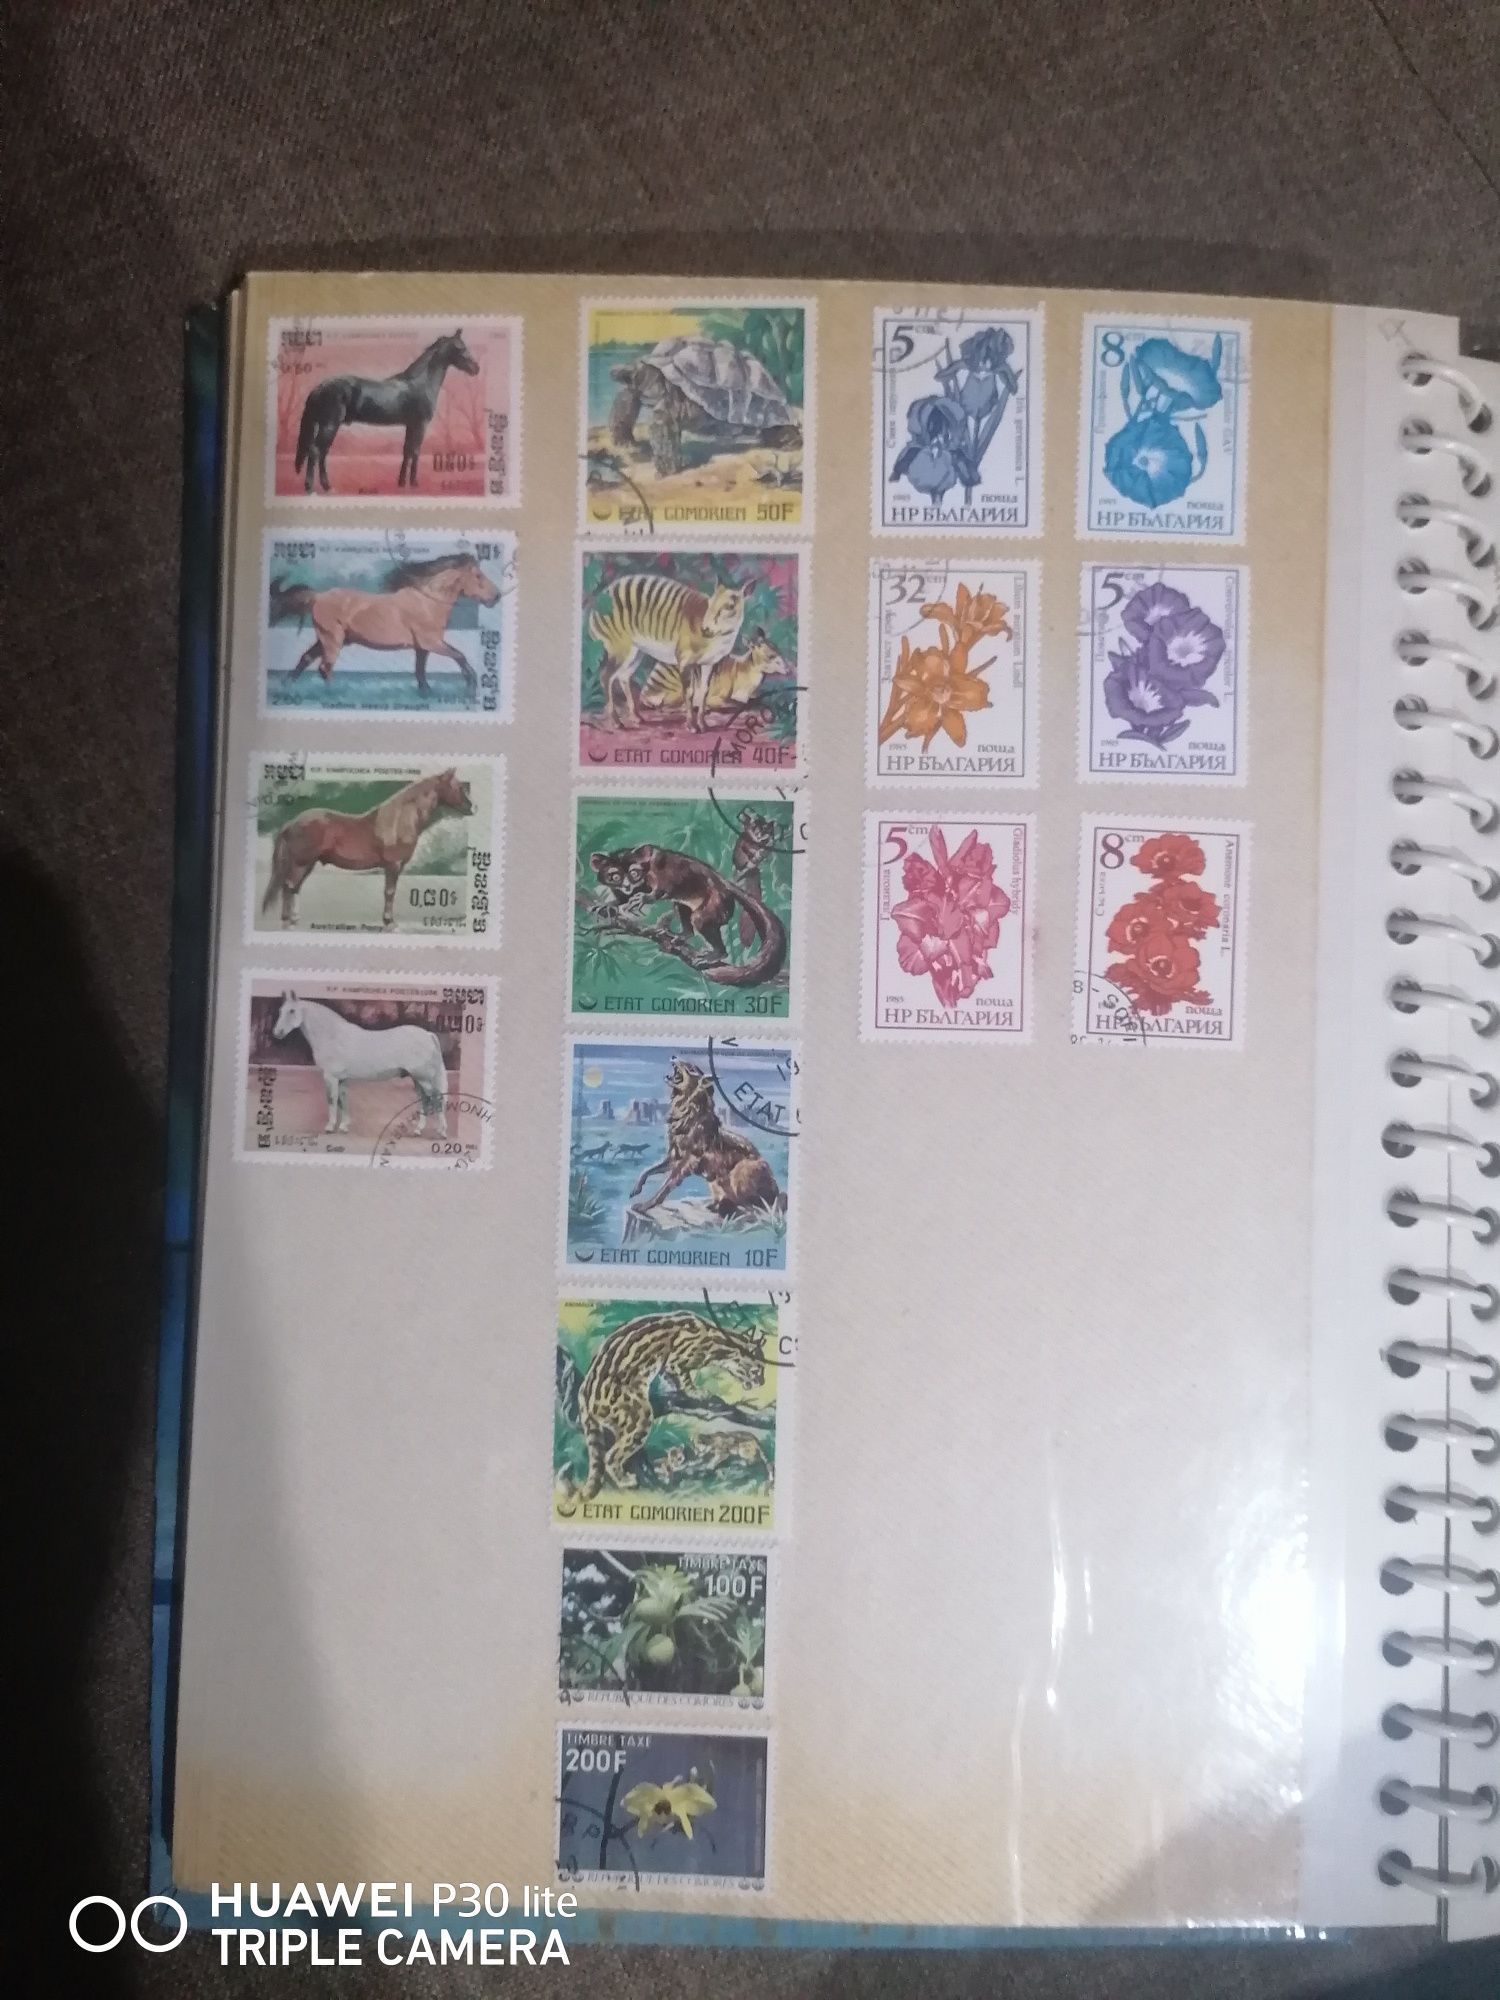 Vând timbre vechi